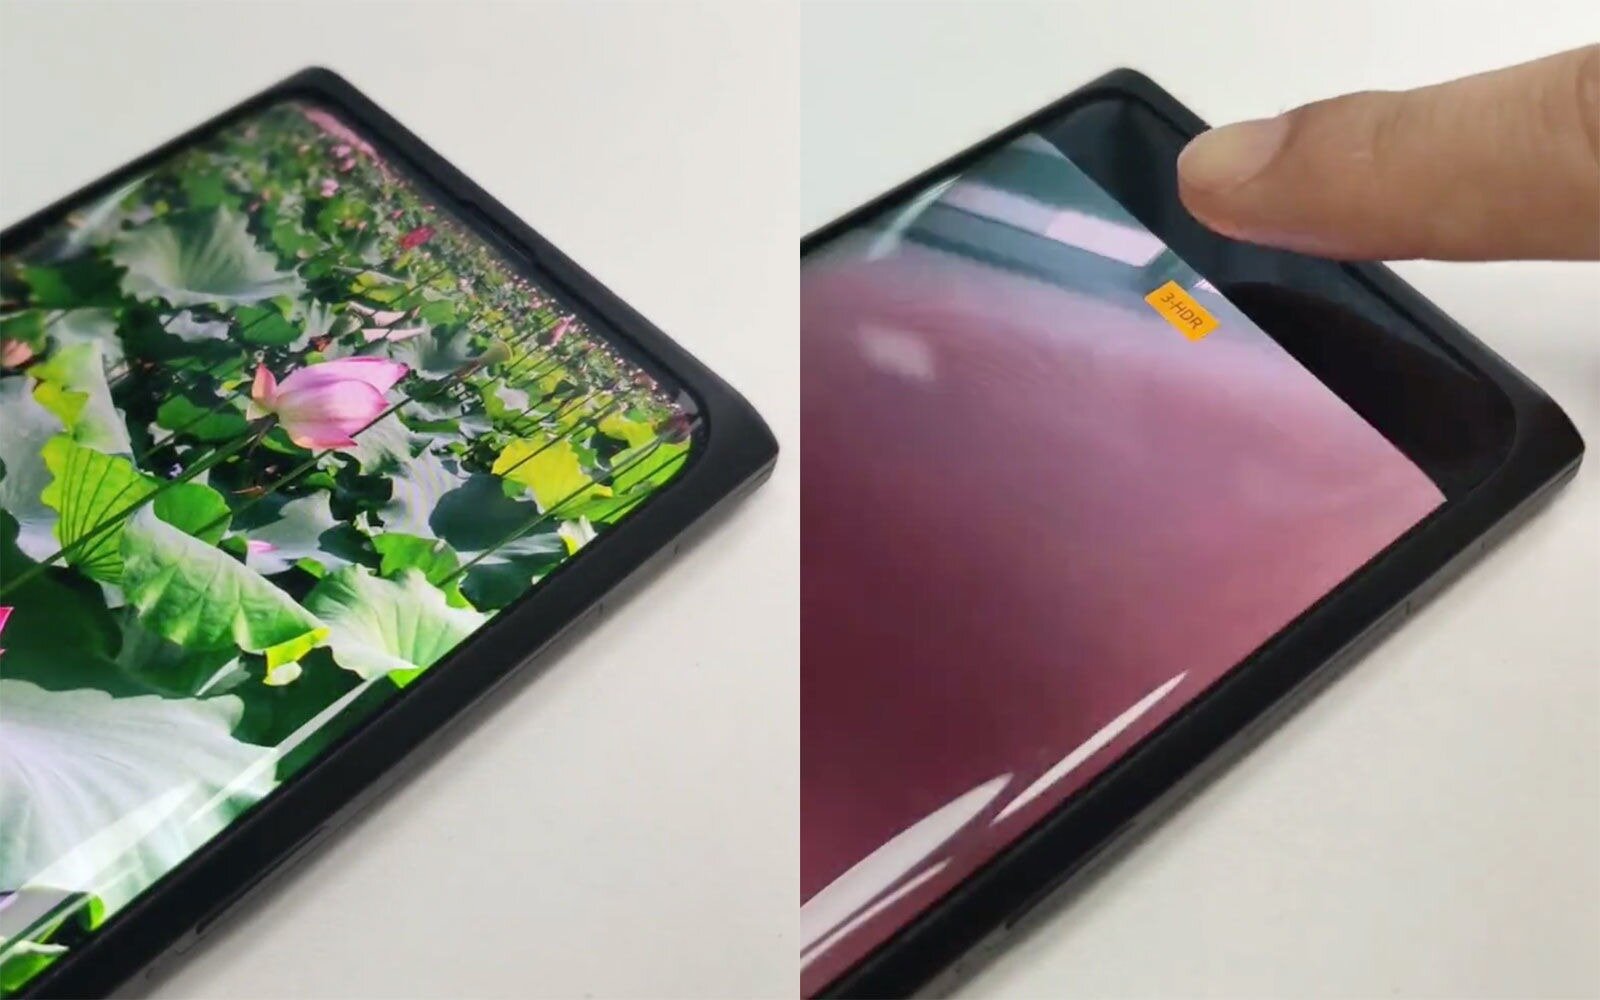 Περισσότερες πληροφορίες για "Oppo και Xiaomi επιδεικνύουν smartphones με αόρατες selfie κάμερες κάτω από την οθόνη"